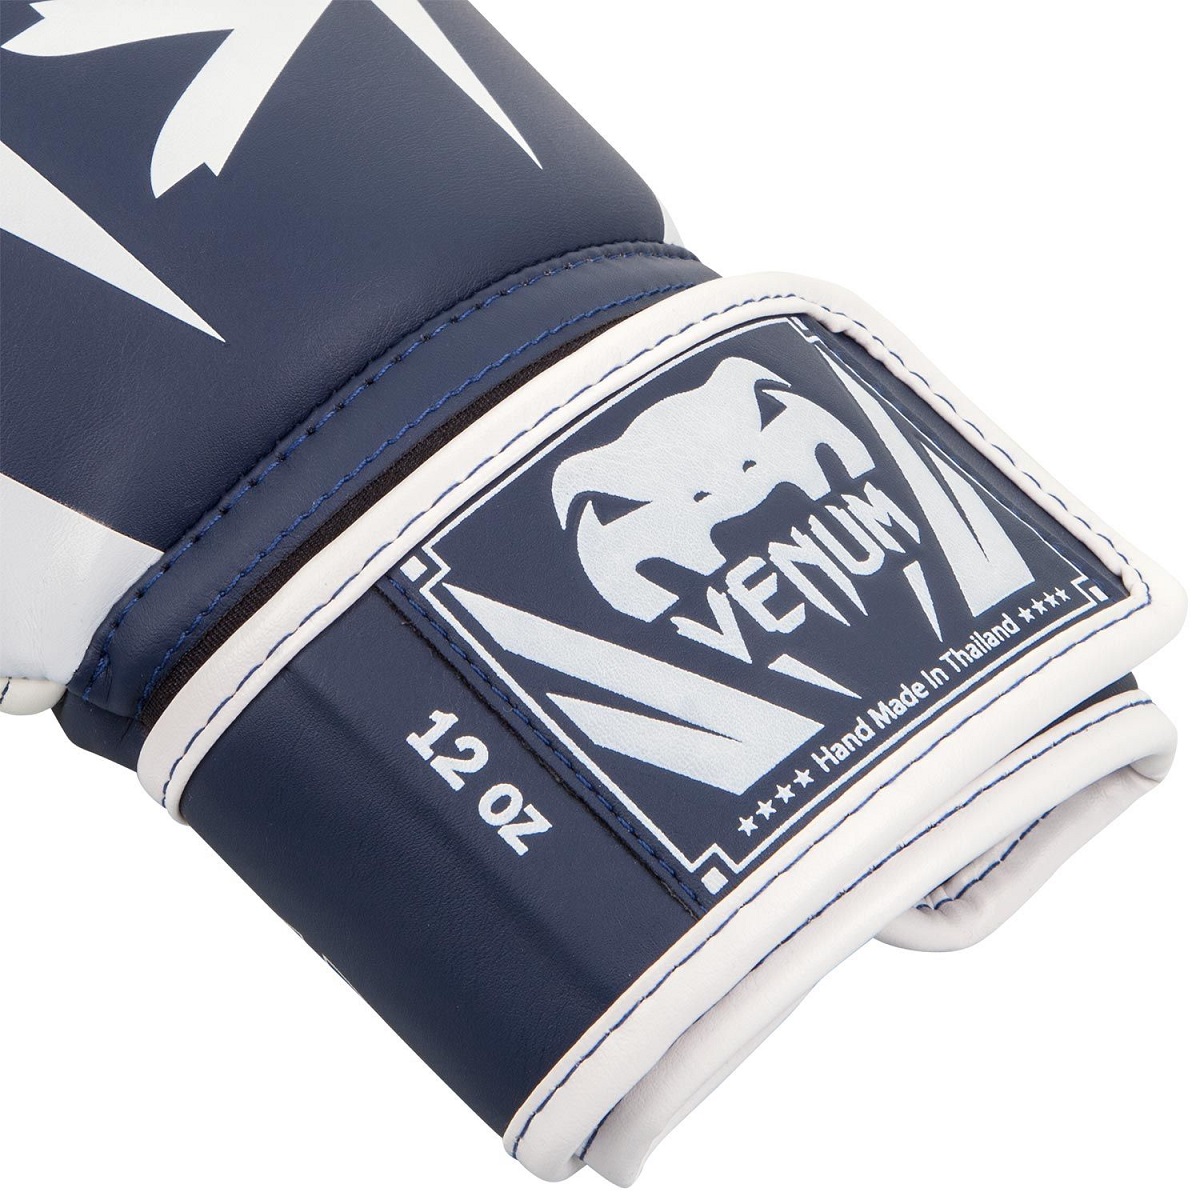 VENUM ボクシング グローブ ELITE BOXING GLOVES （ホワイト×ネイビーブルー） VENUM-1392-410  //スパーリンググローブ ボクシング キックボクシング フィットネス M-WORLD 送料無料 武道格闘技ショップM-WORLD